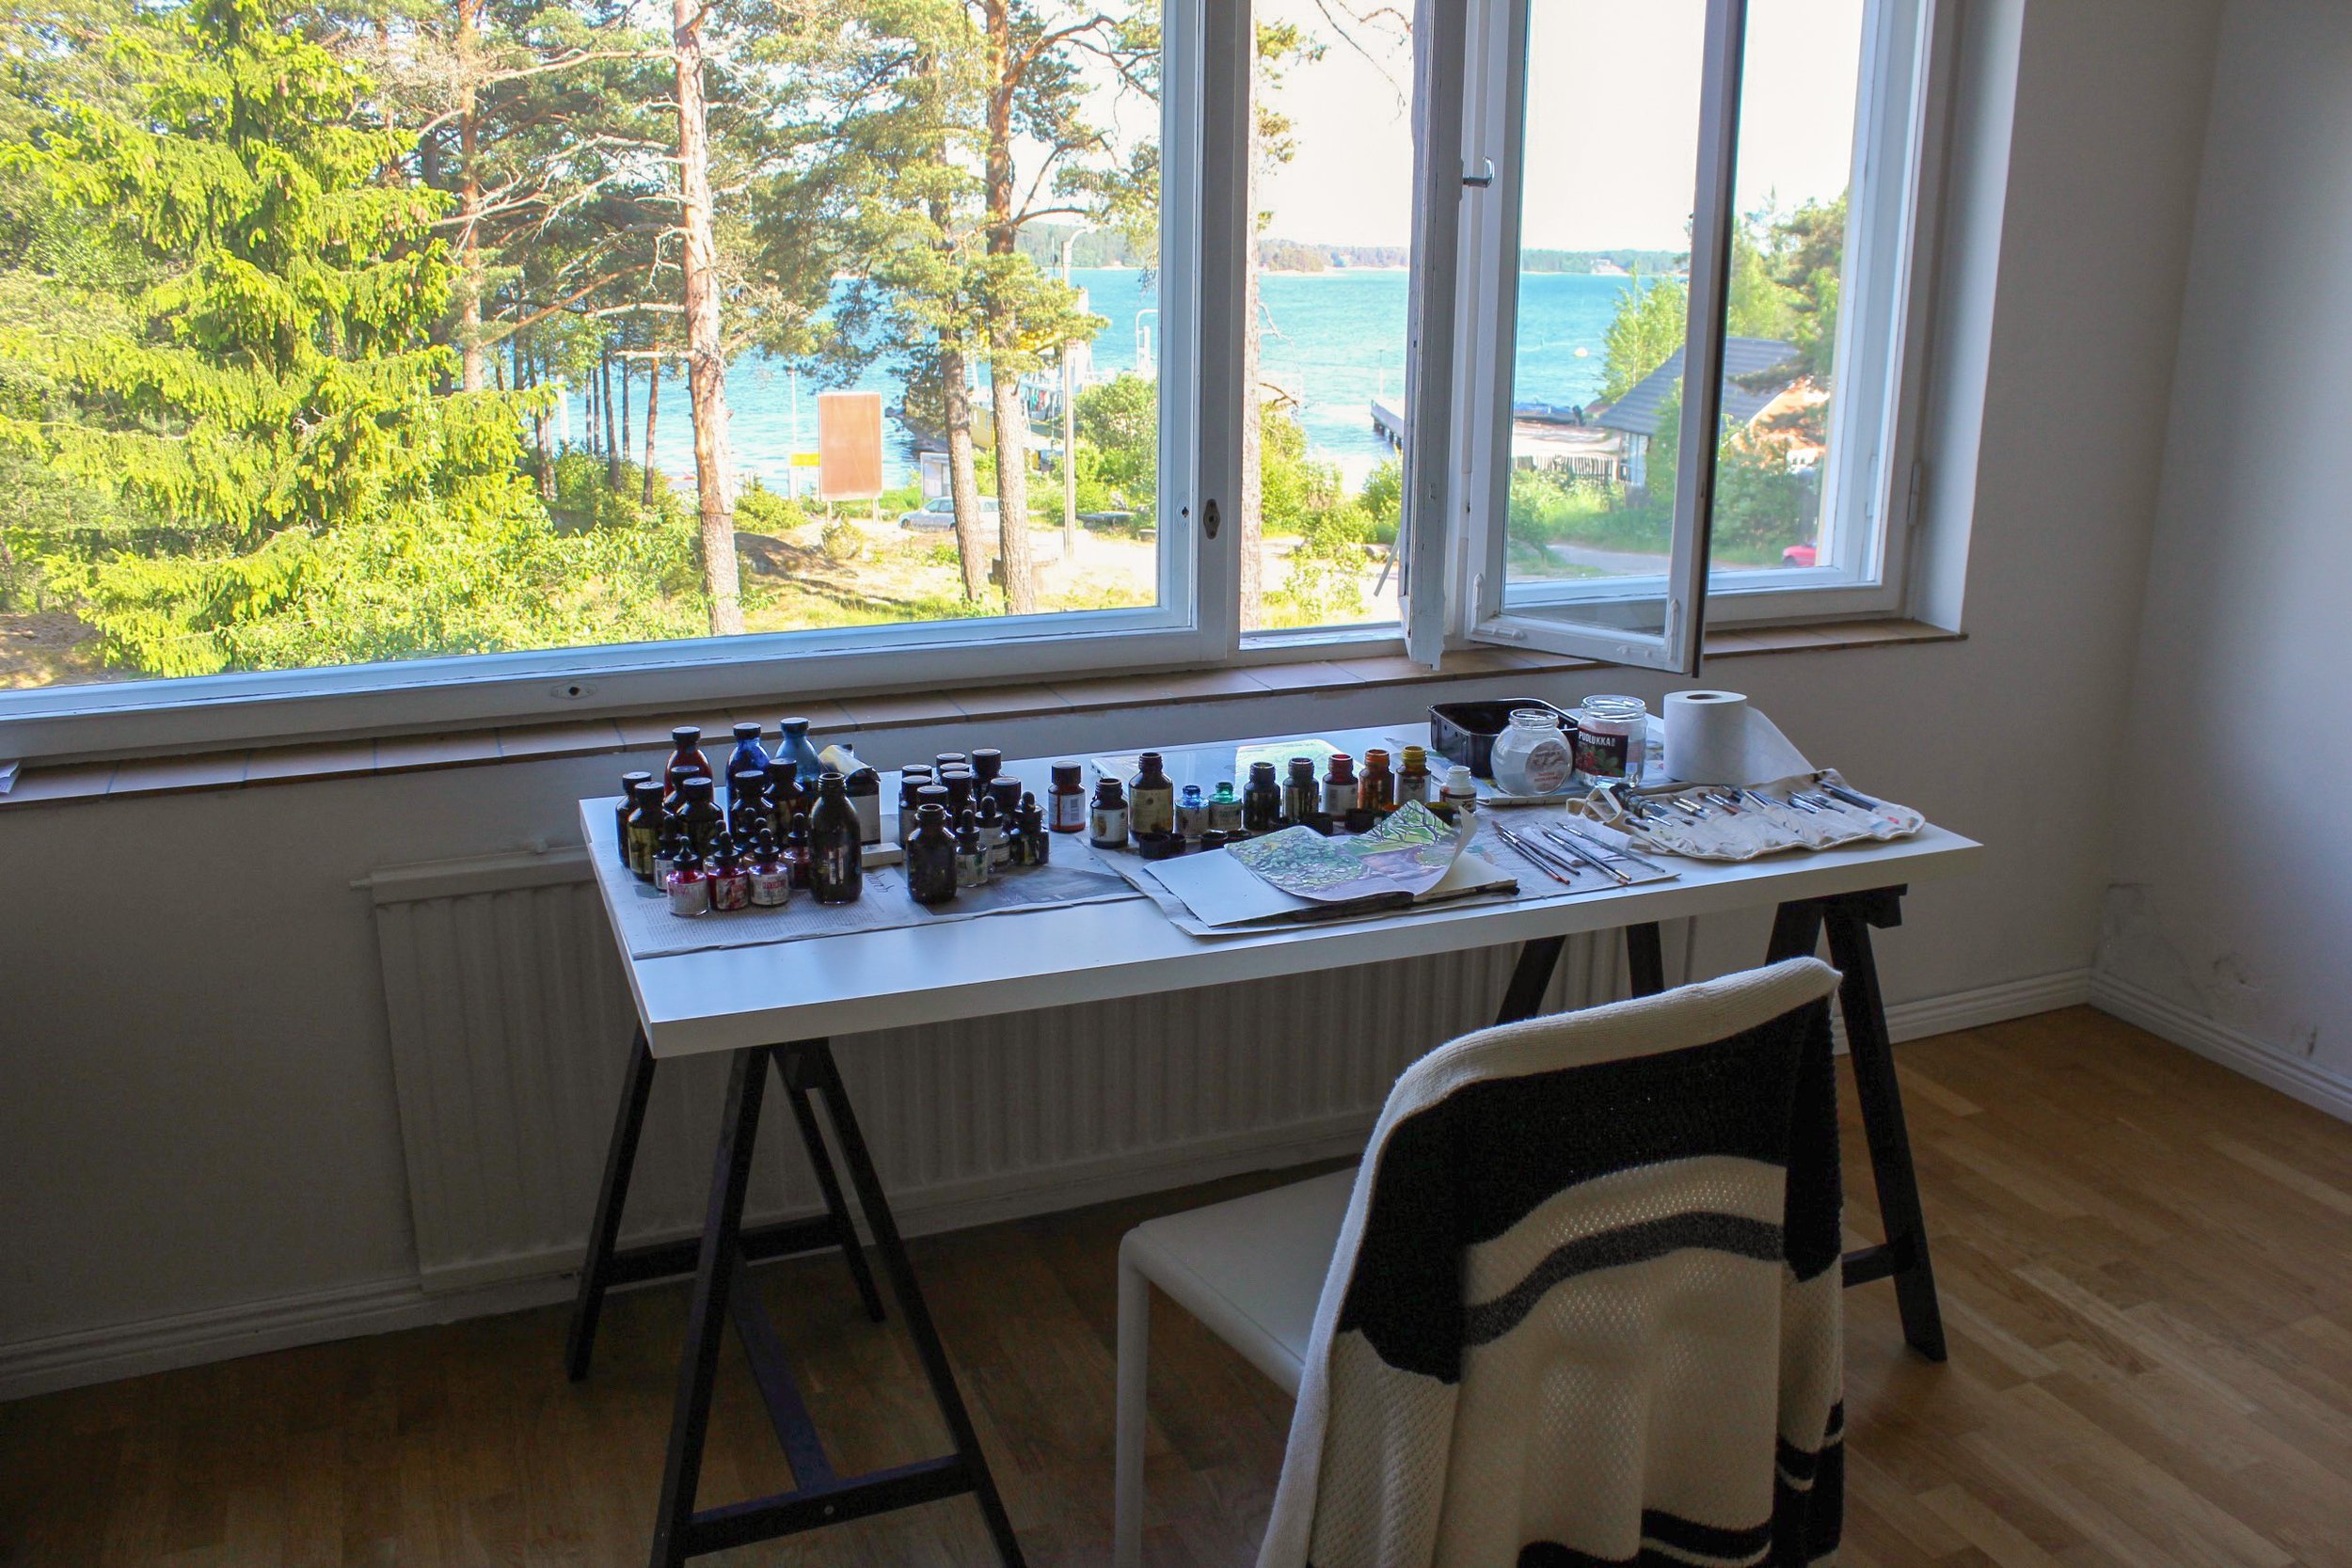  Archipelago Art Residency of Korpo Island in Finland (2016). 